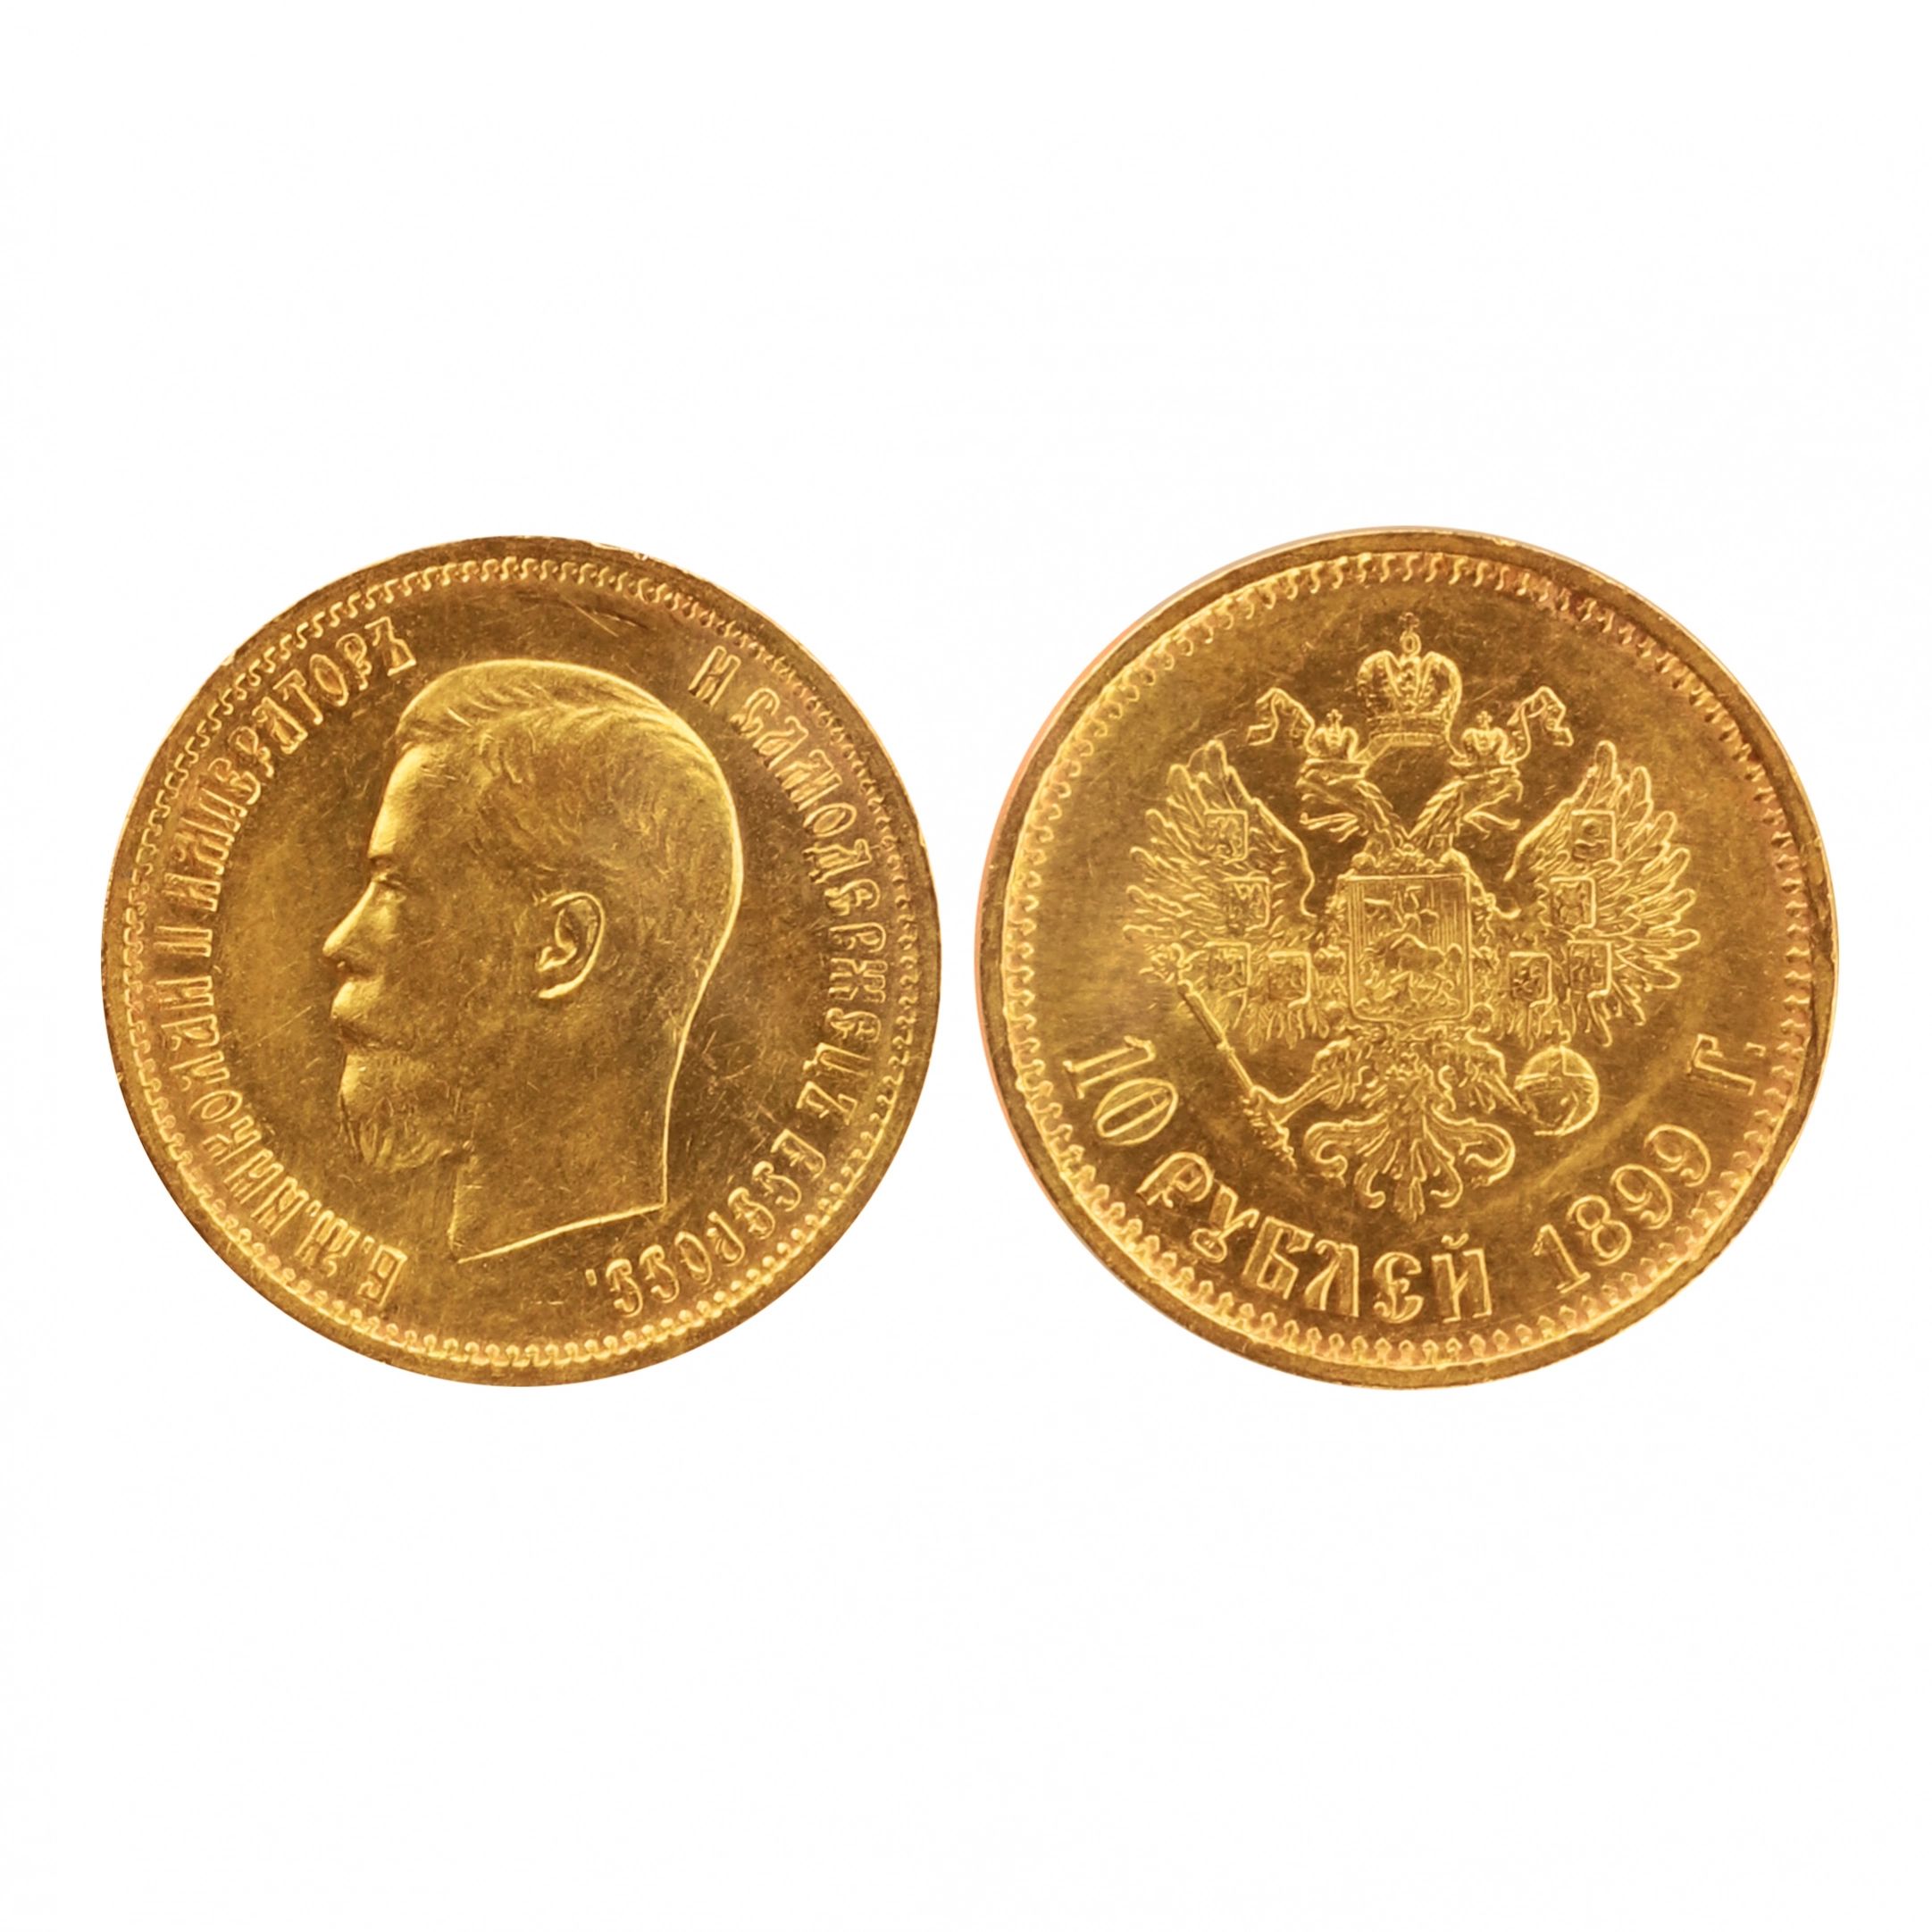 Zelta-15-rublu-moneta-1899